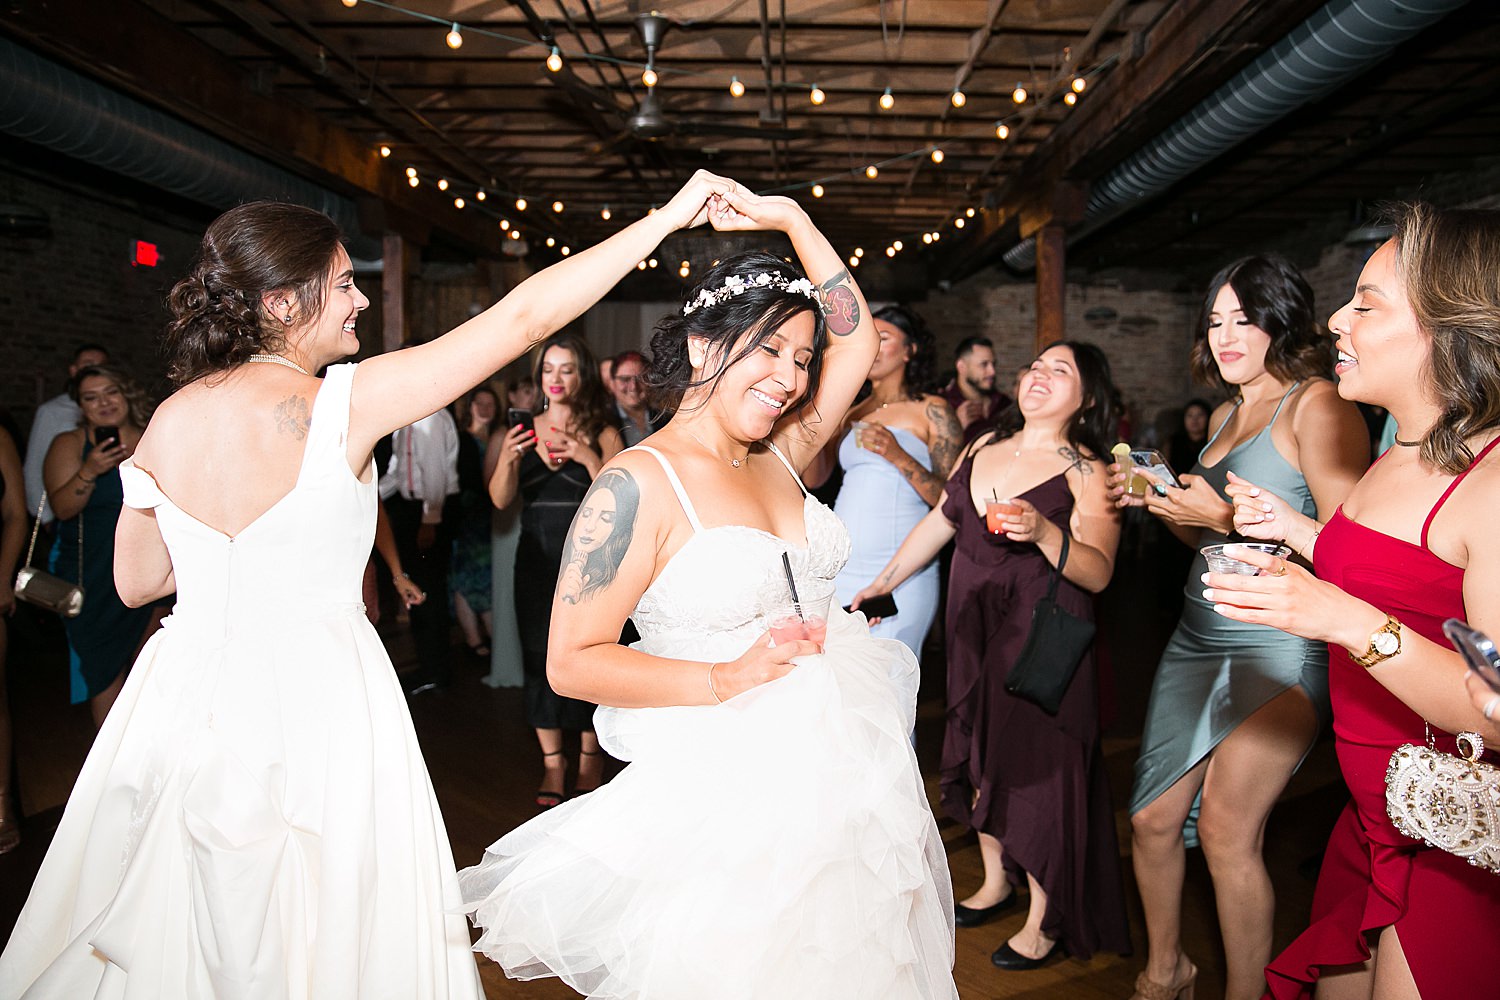 Brides dance together at wedding reception.